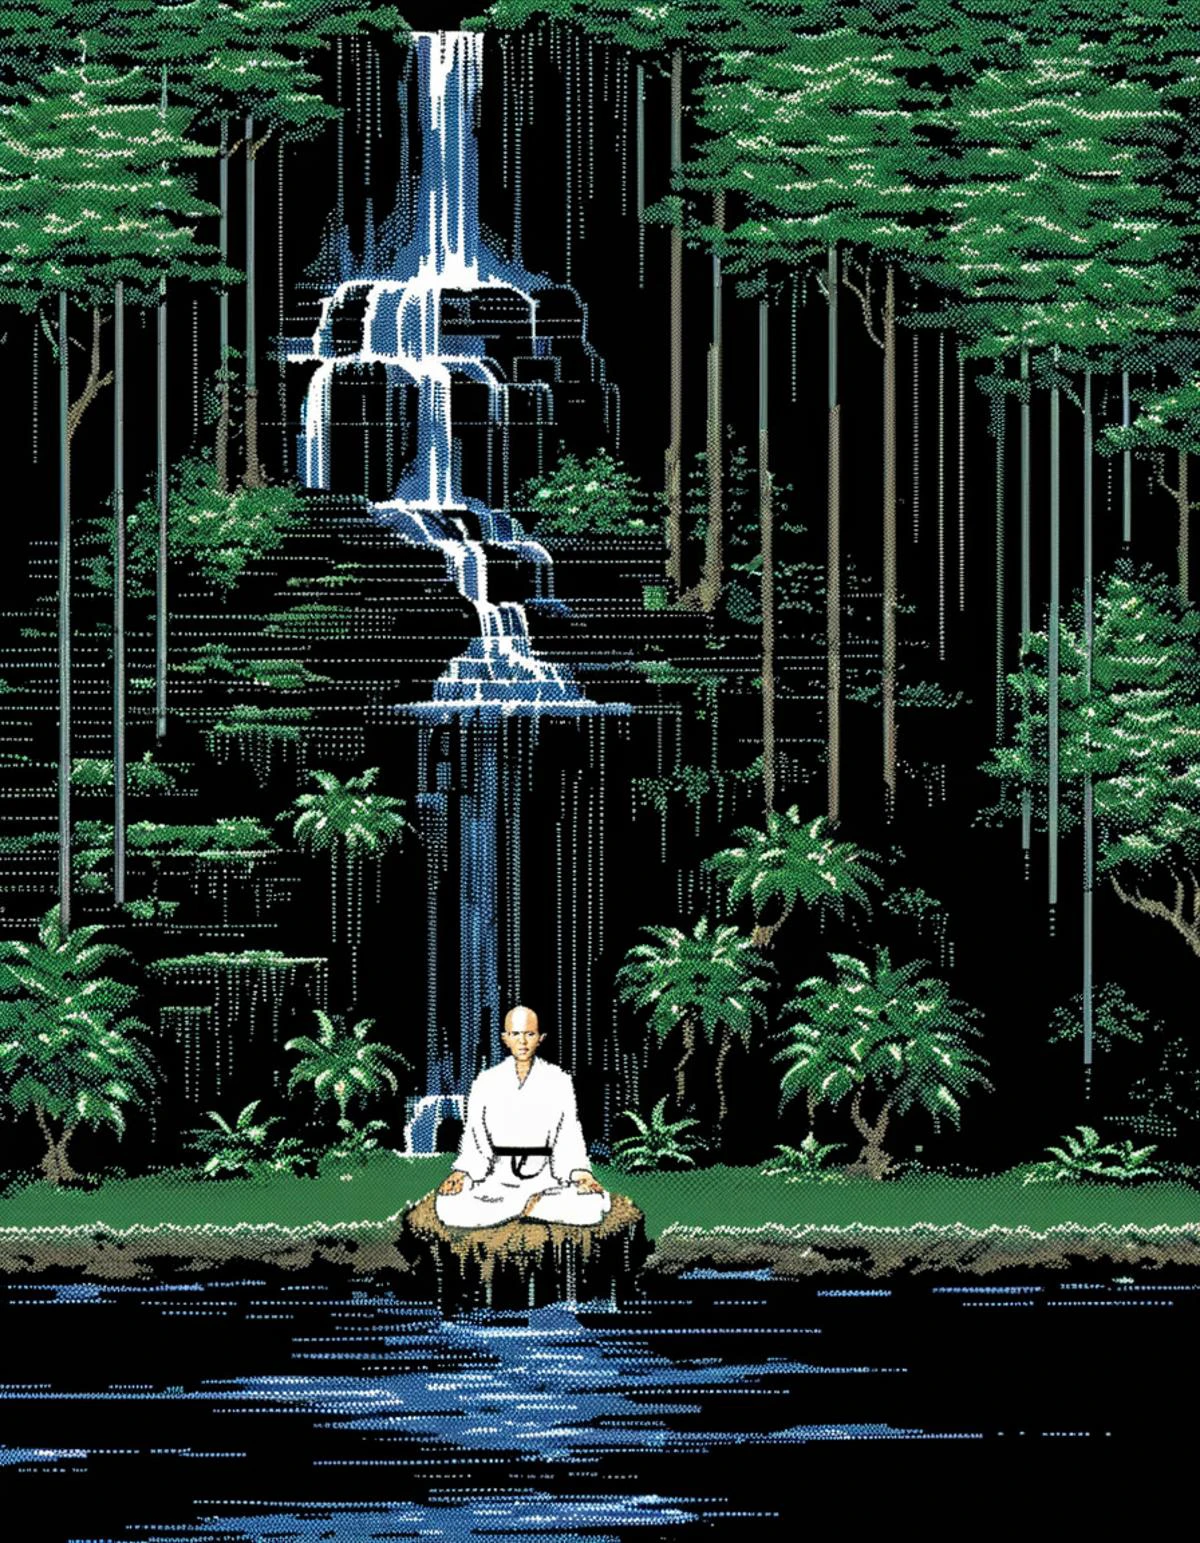 MacPaint 像素圖像：一名僧侶在瀑布前冥想, 像素藝術, 最好的品質, 80年代, 极简主义者, 